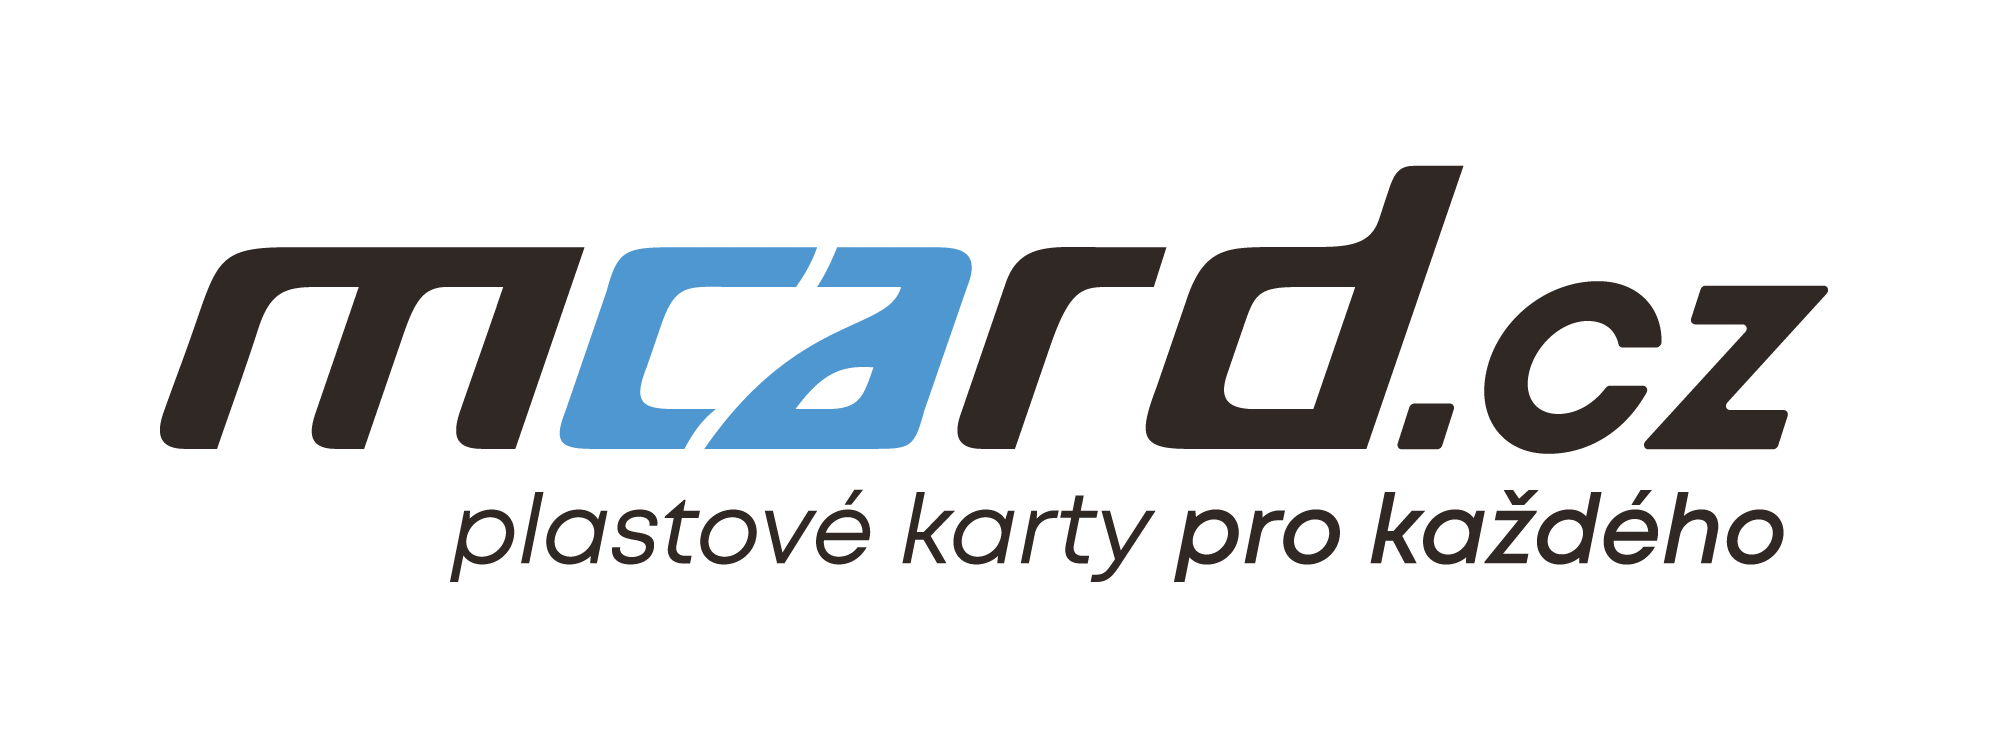 logo Mcard.cz